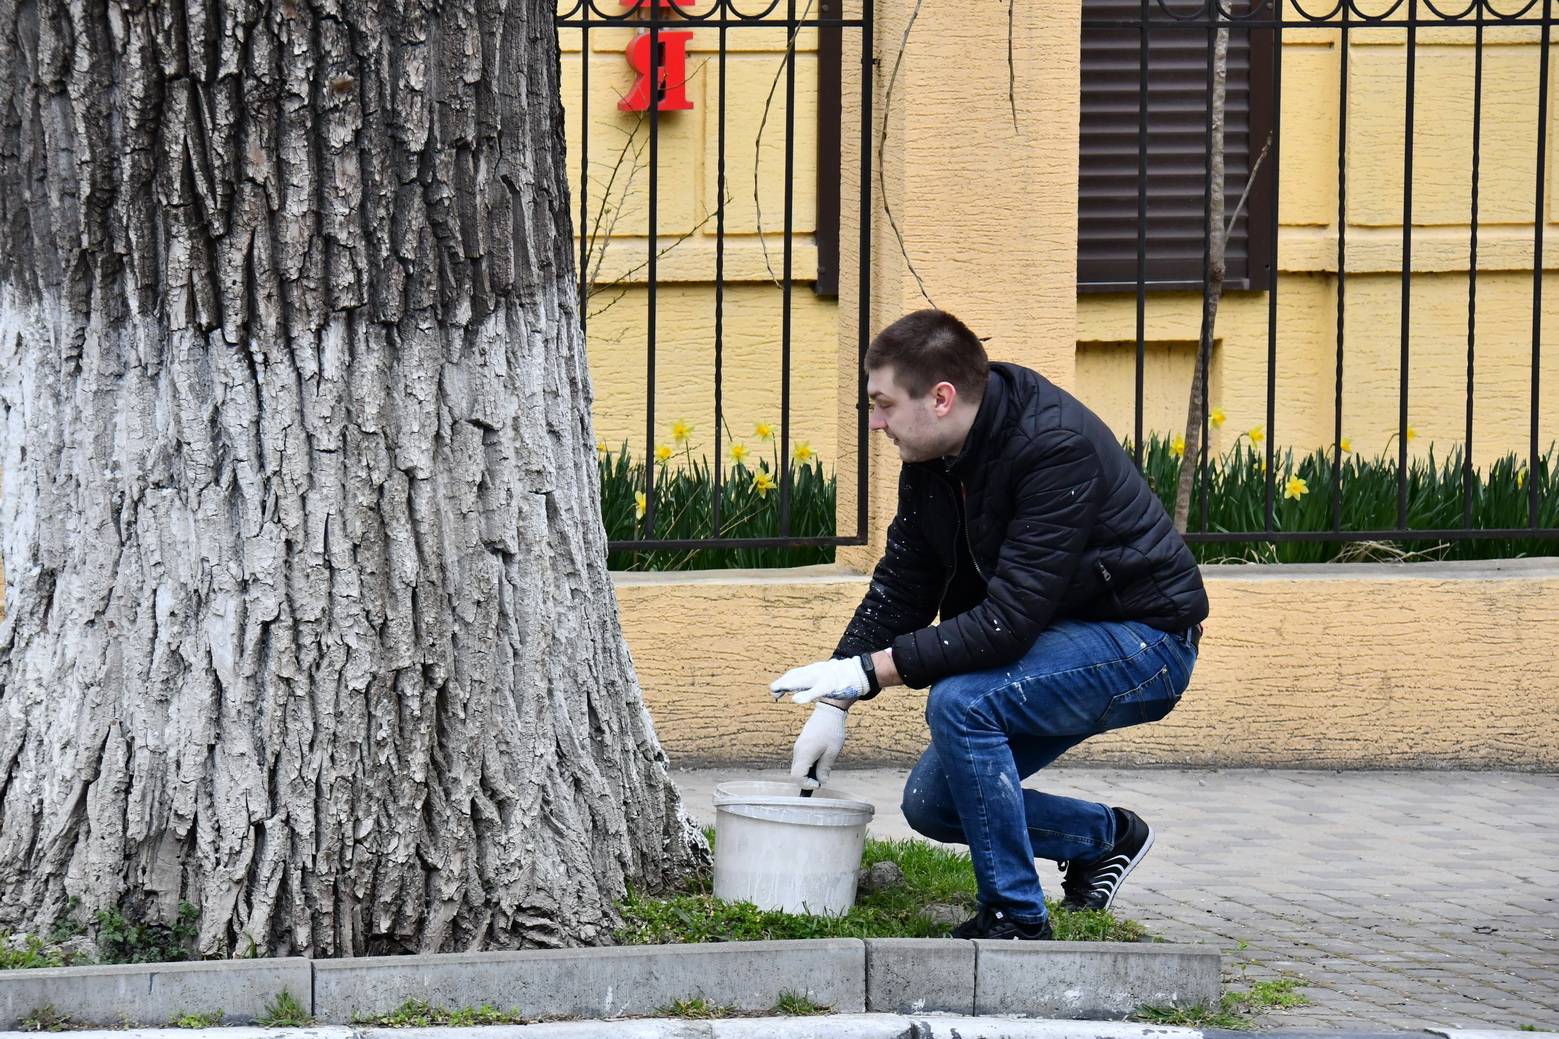 Белить или не белить?  В Новороссийске спор о побелке деревьев вышел на новый уровень